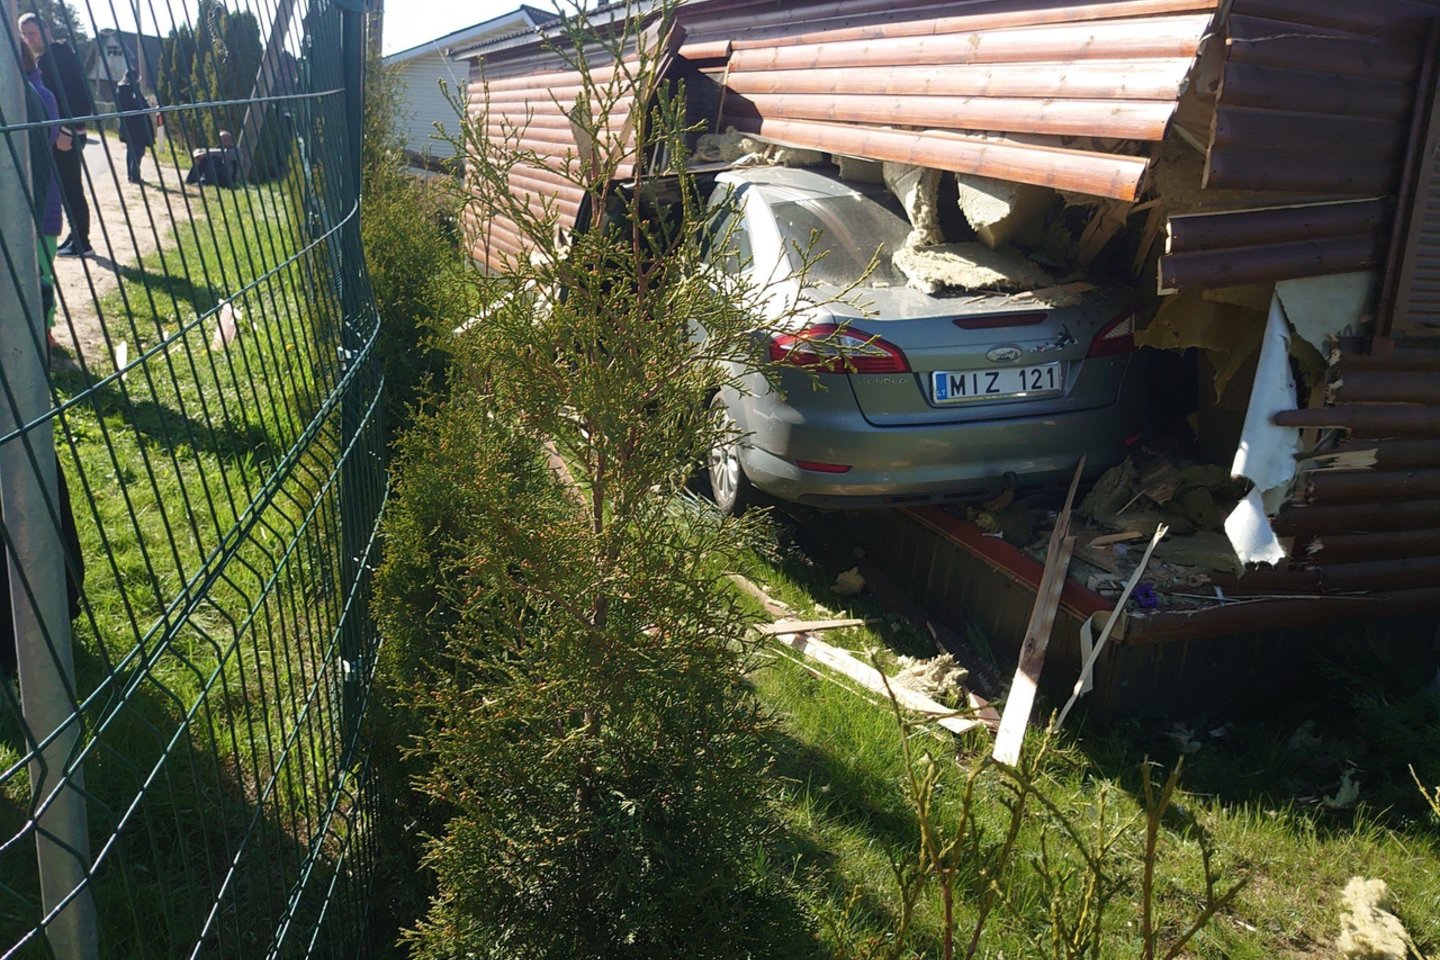  Girto vairuotojo automobilis Vilniuje sugriovė namą.<br> valstietis.lt nuotr.